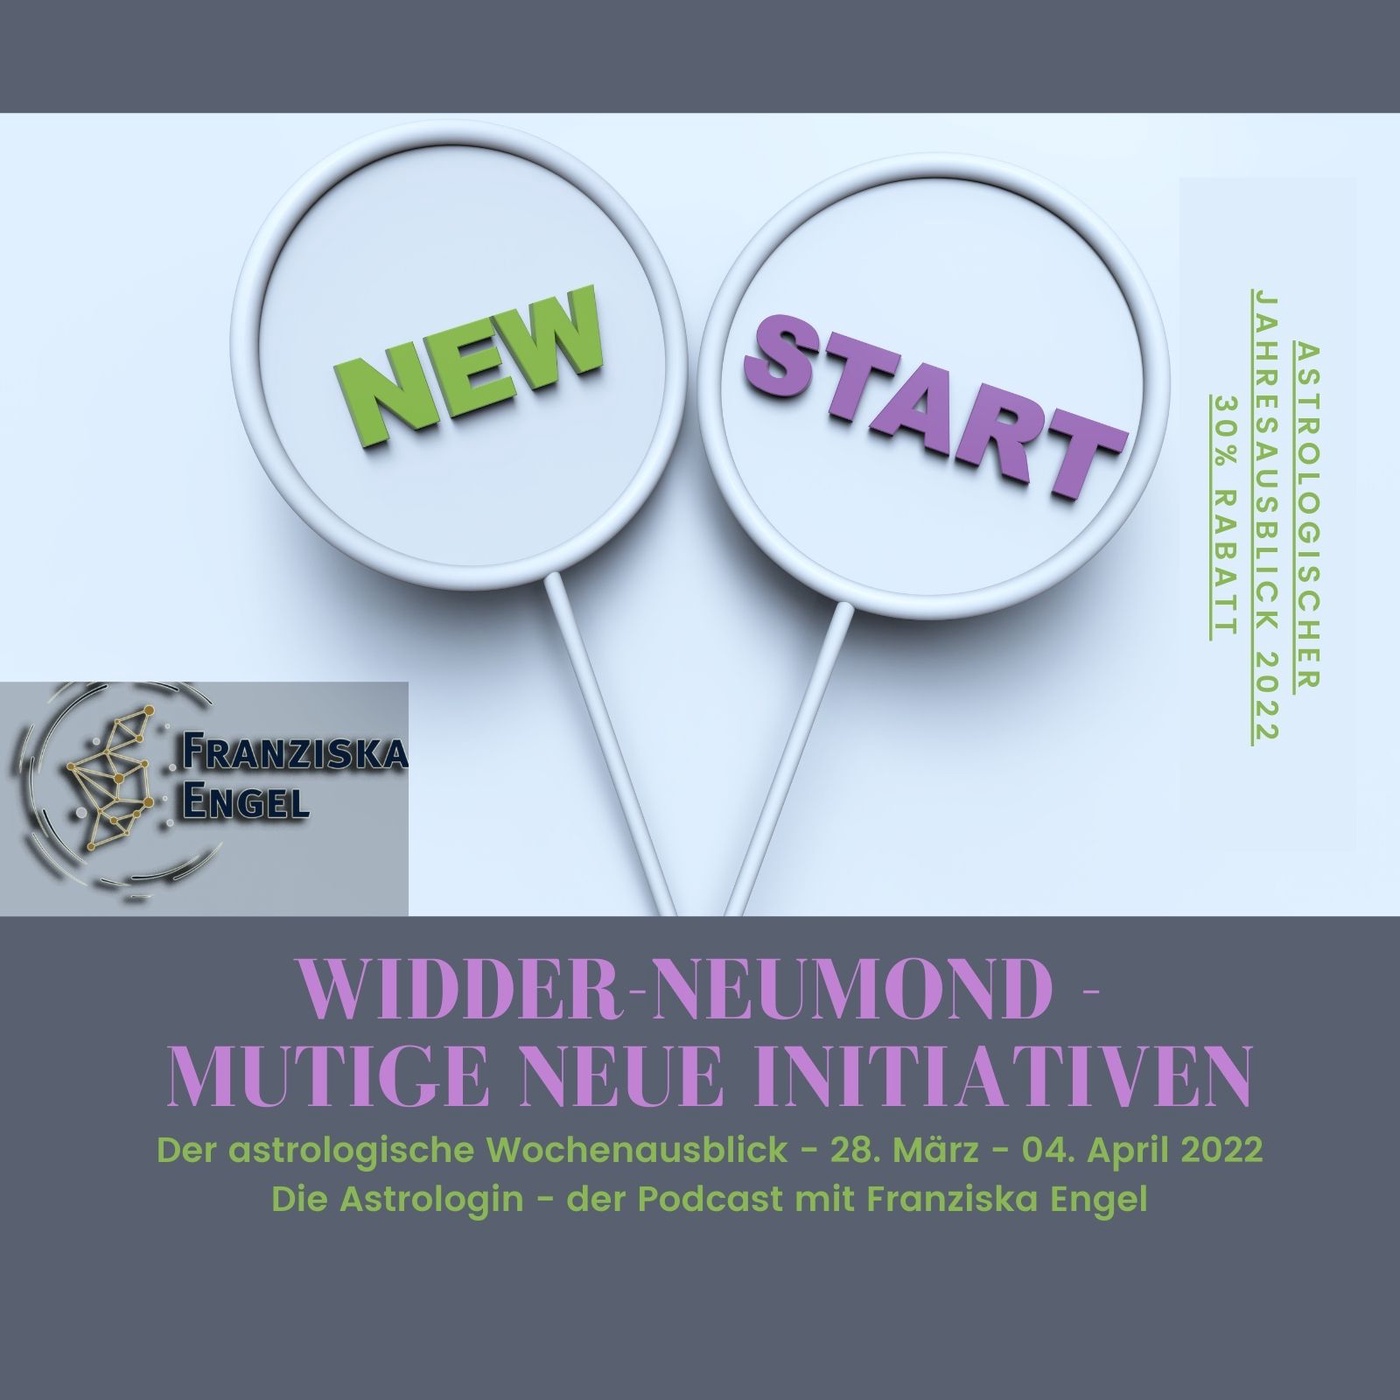 Widder-Neumond - mutige, neue Initiativen